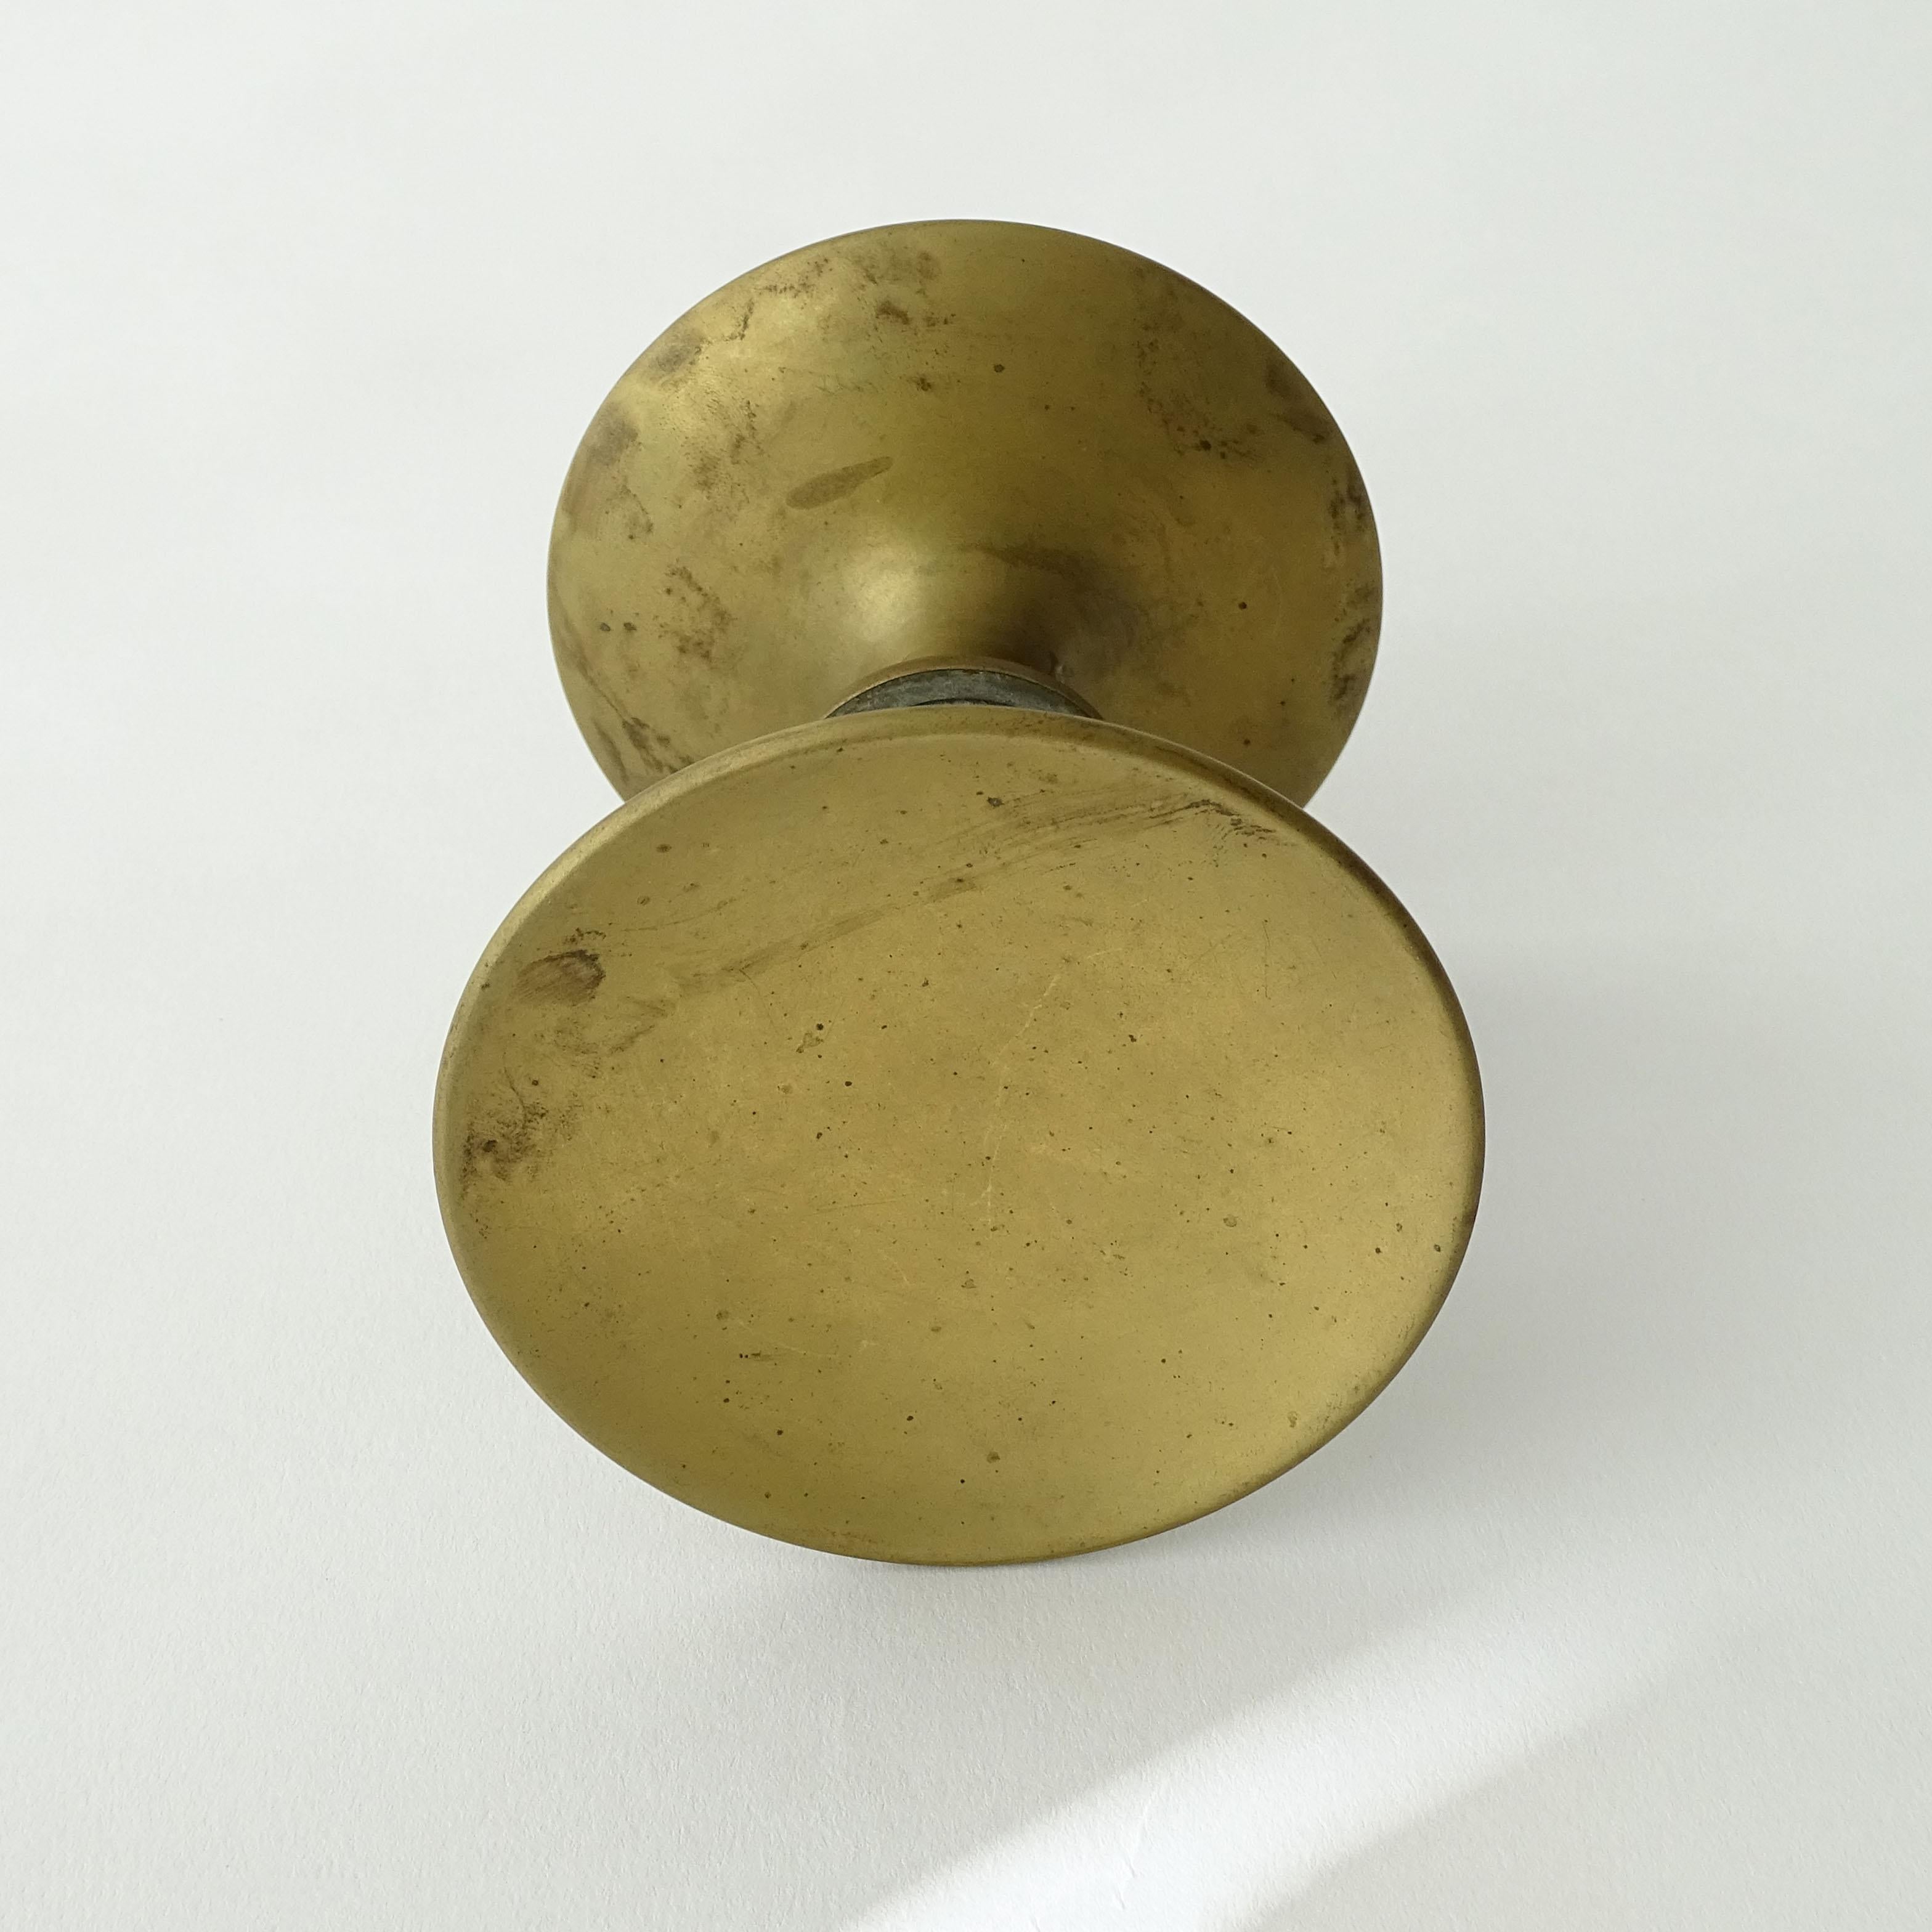 Splendid brass door handle in concave round form
Measuring diameter 9.8 x 11.2 total of the two handles